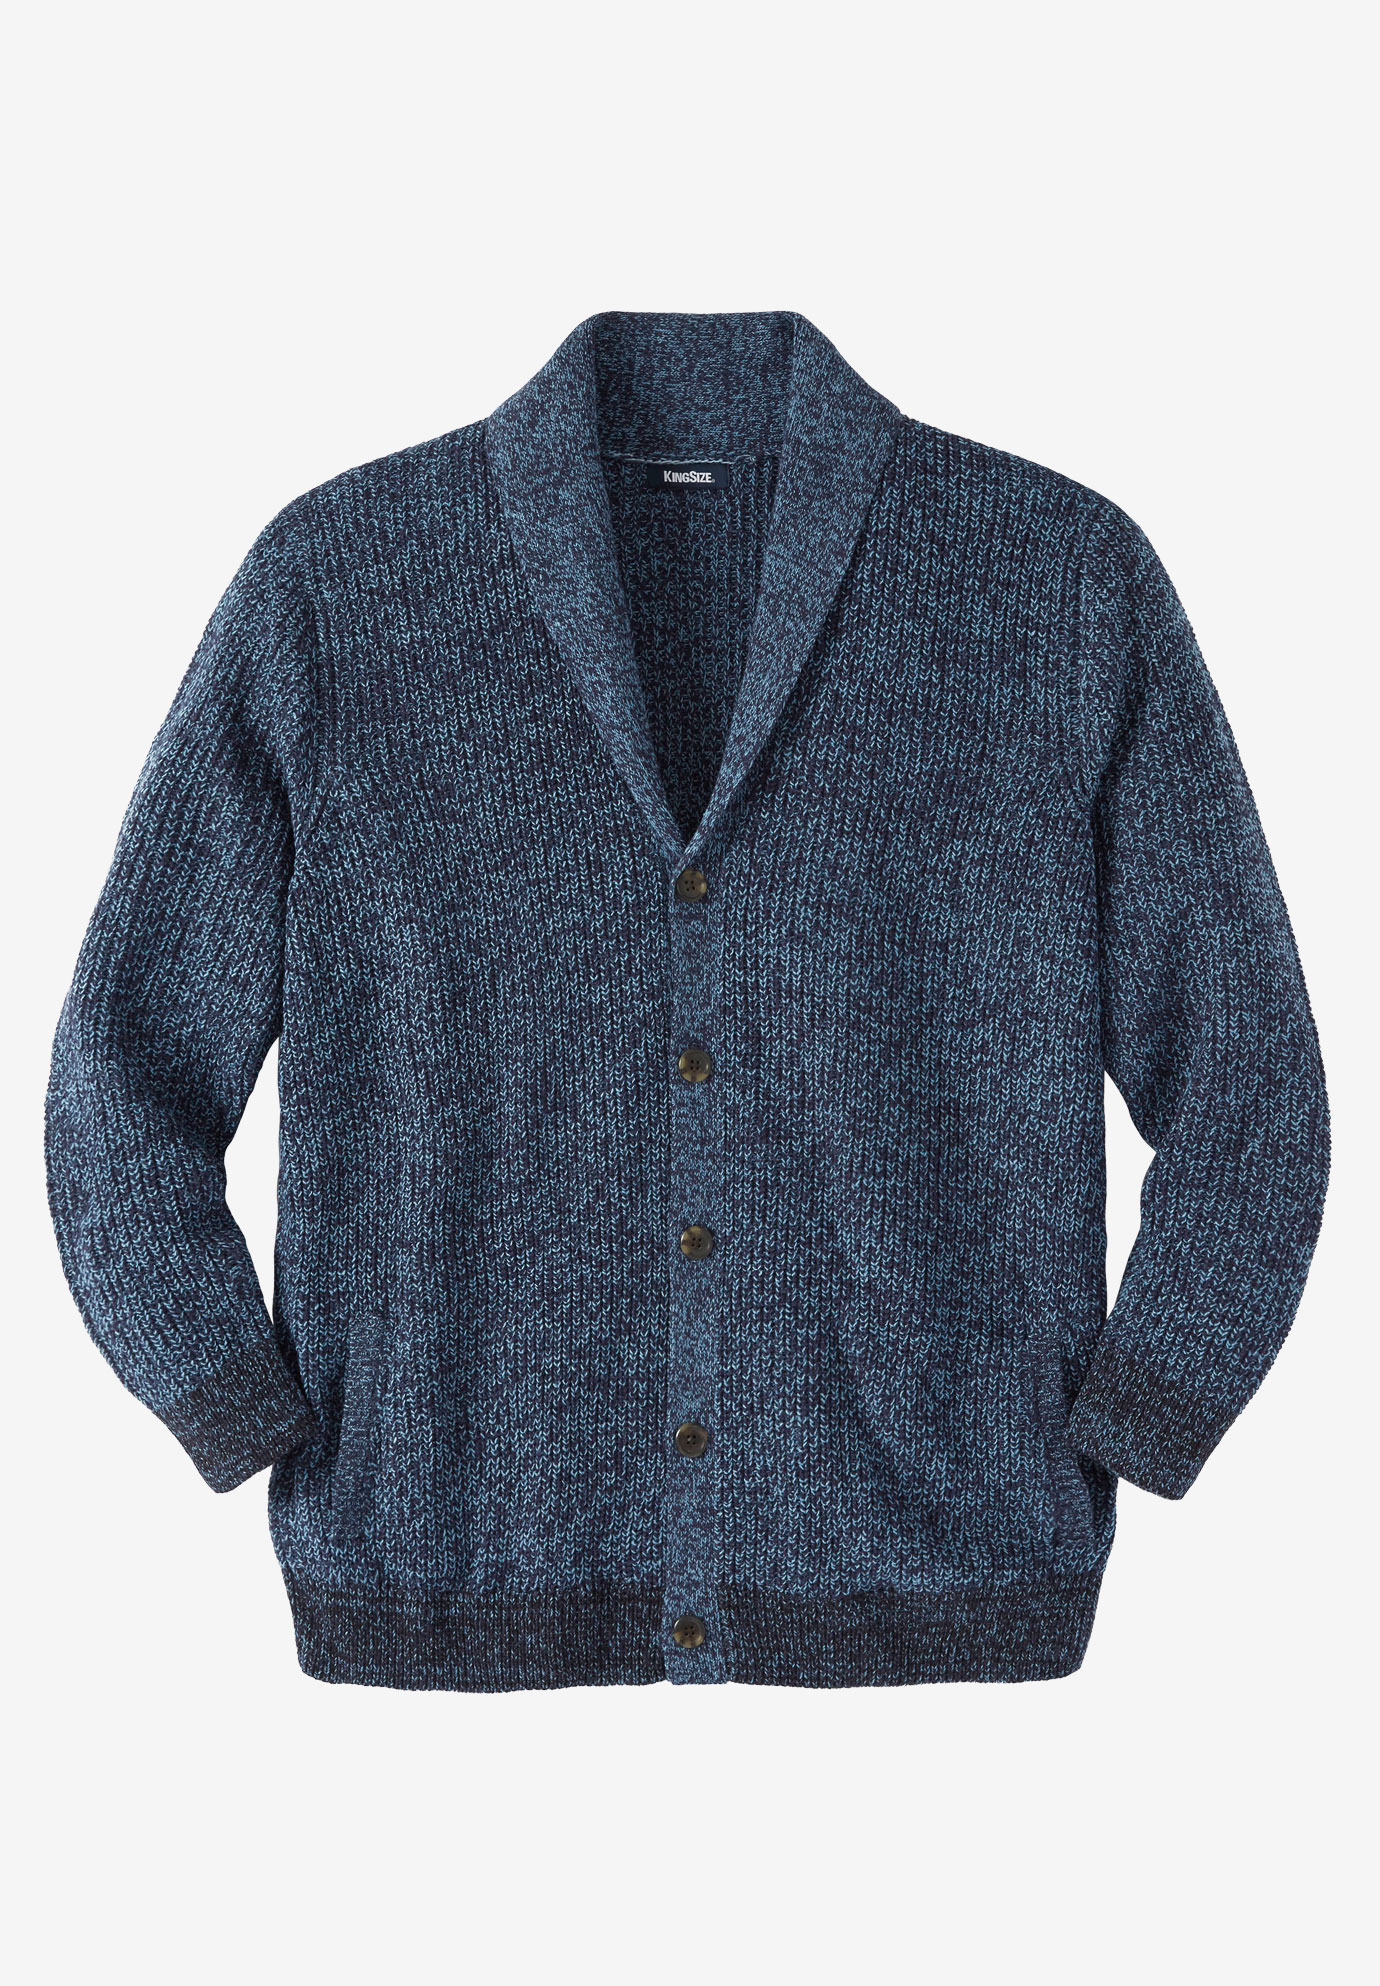 Shaker Knit Shawl-Collar Cardigan Sweater | OneStopPlus